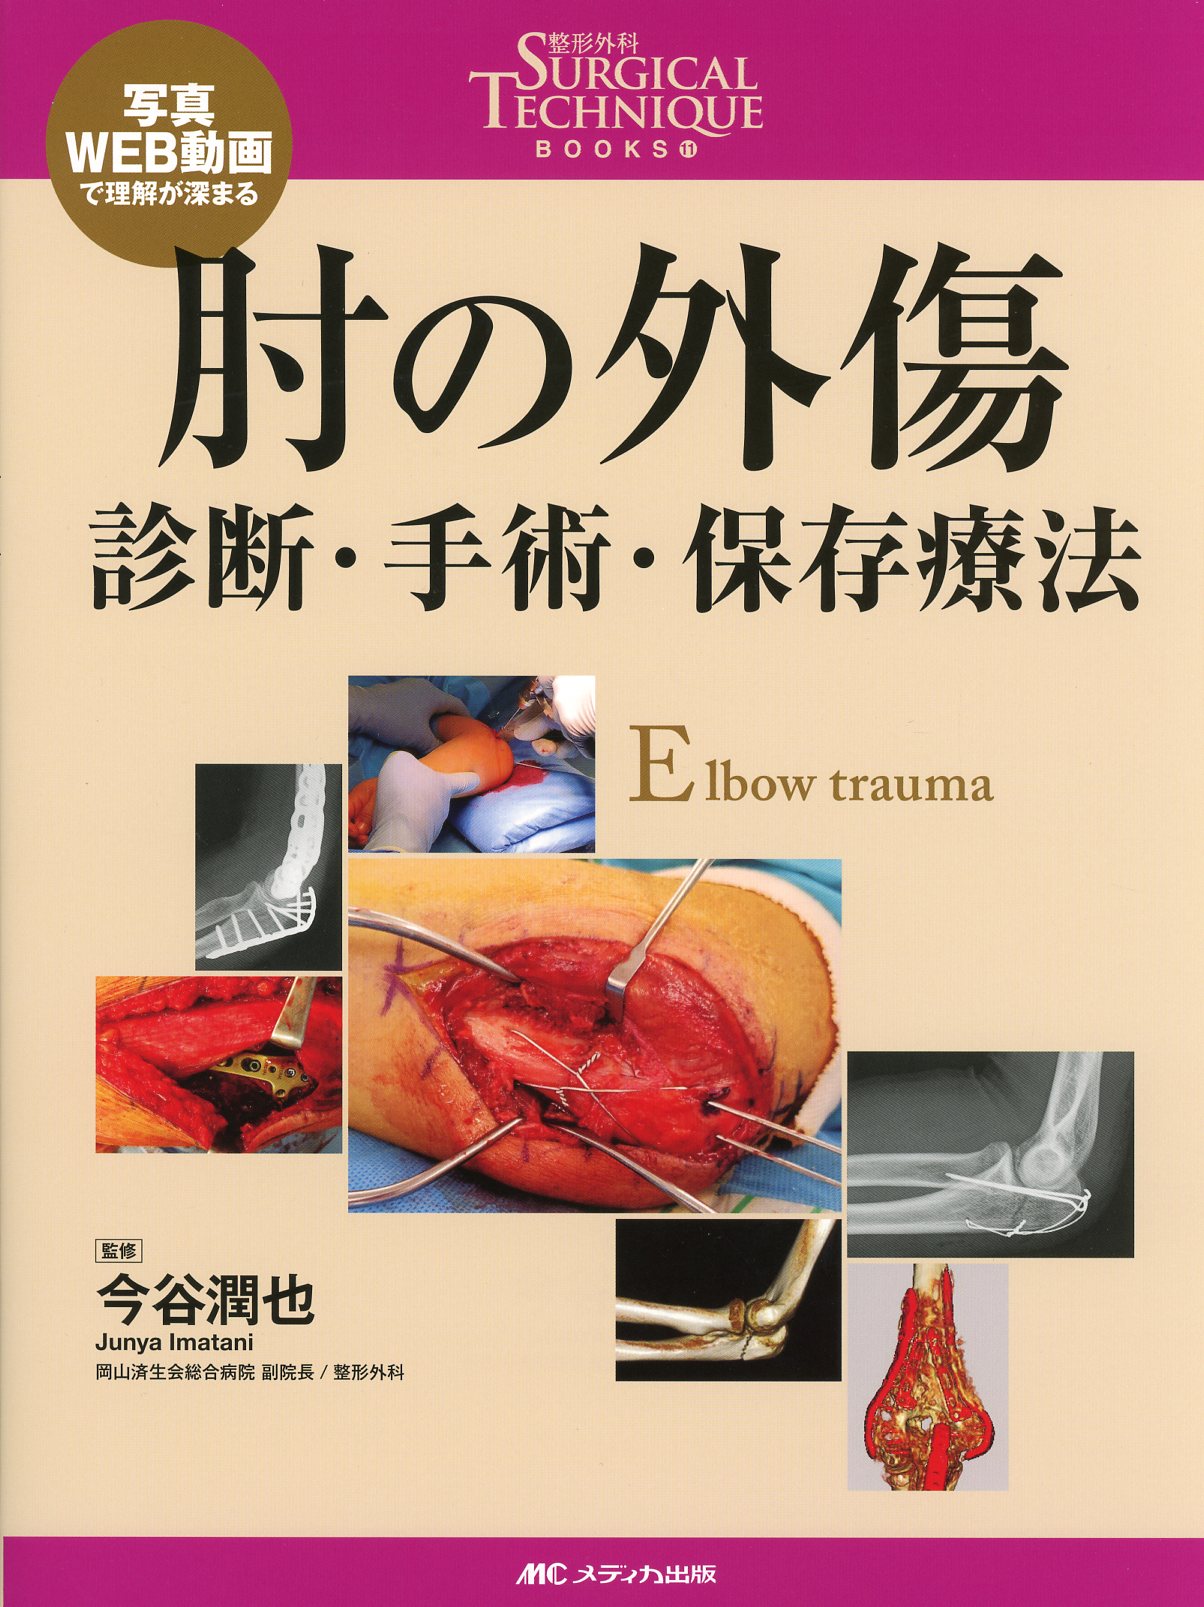 整形外科SURGICAL TECHNIQUE BOOKS 11 写真・WEB動画で理解が深まる 肘の外傷 診断・手術・保存療法